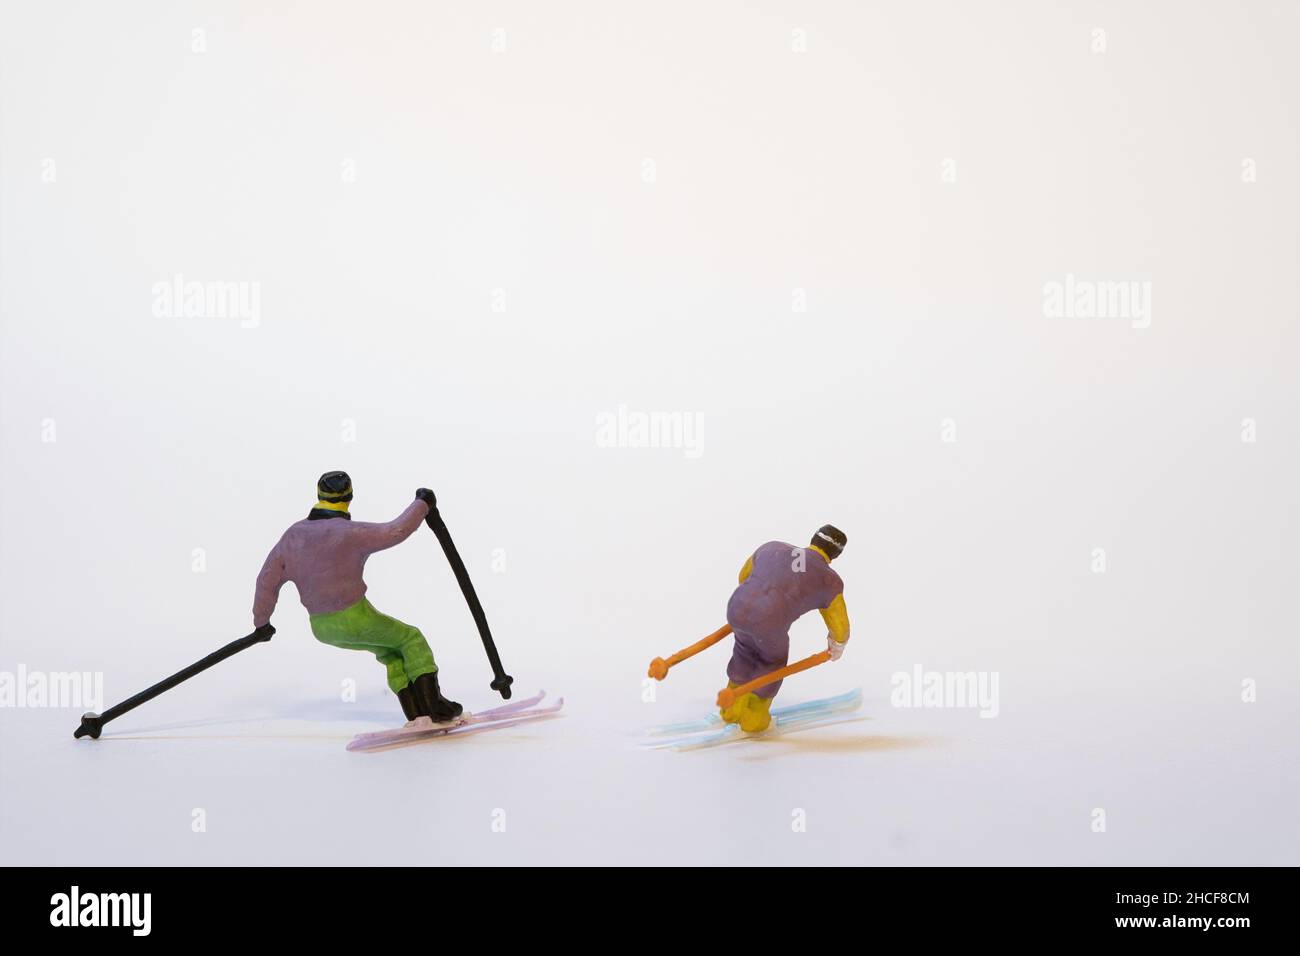 Skieurs miniatures en action - fond blanc, espace de copie Banque D'Images